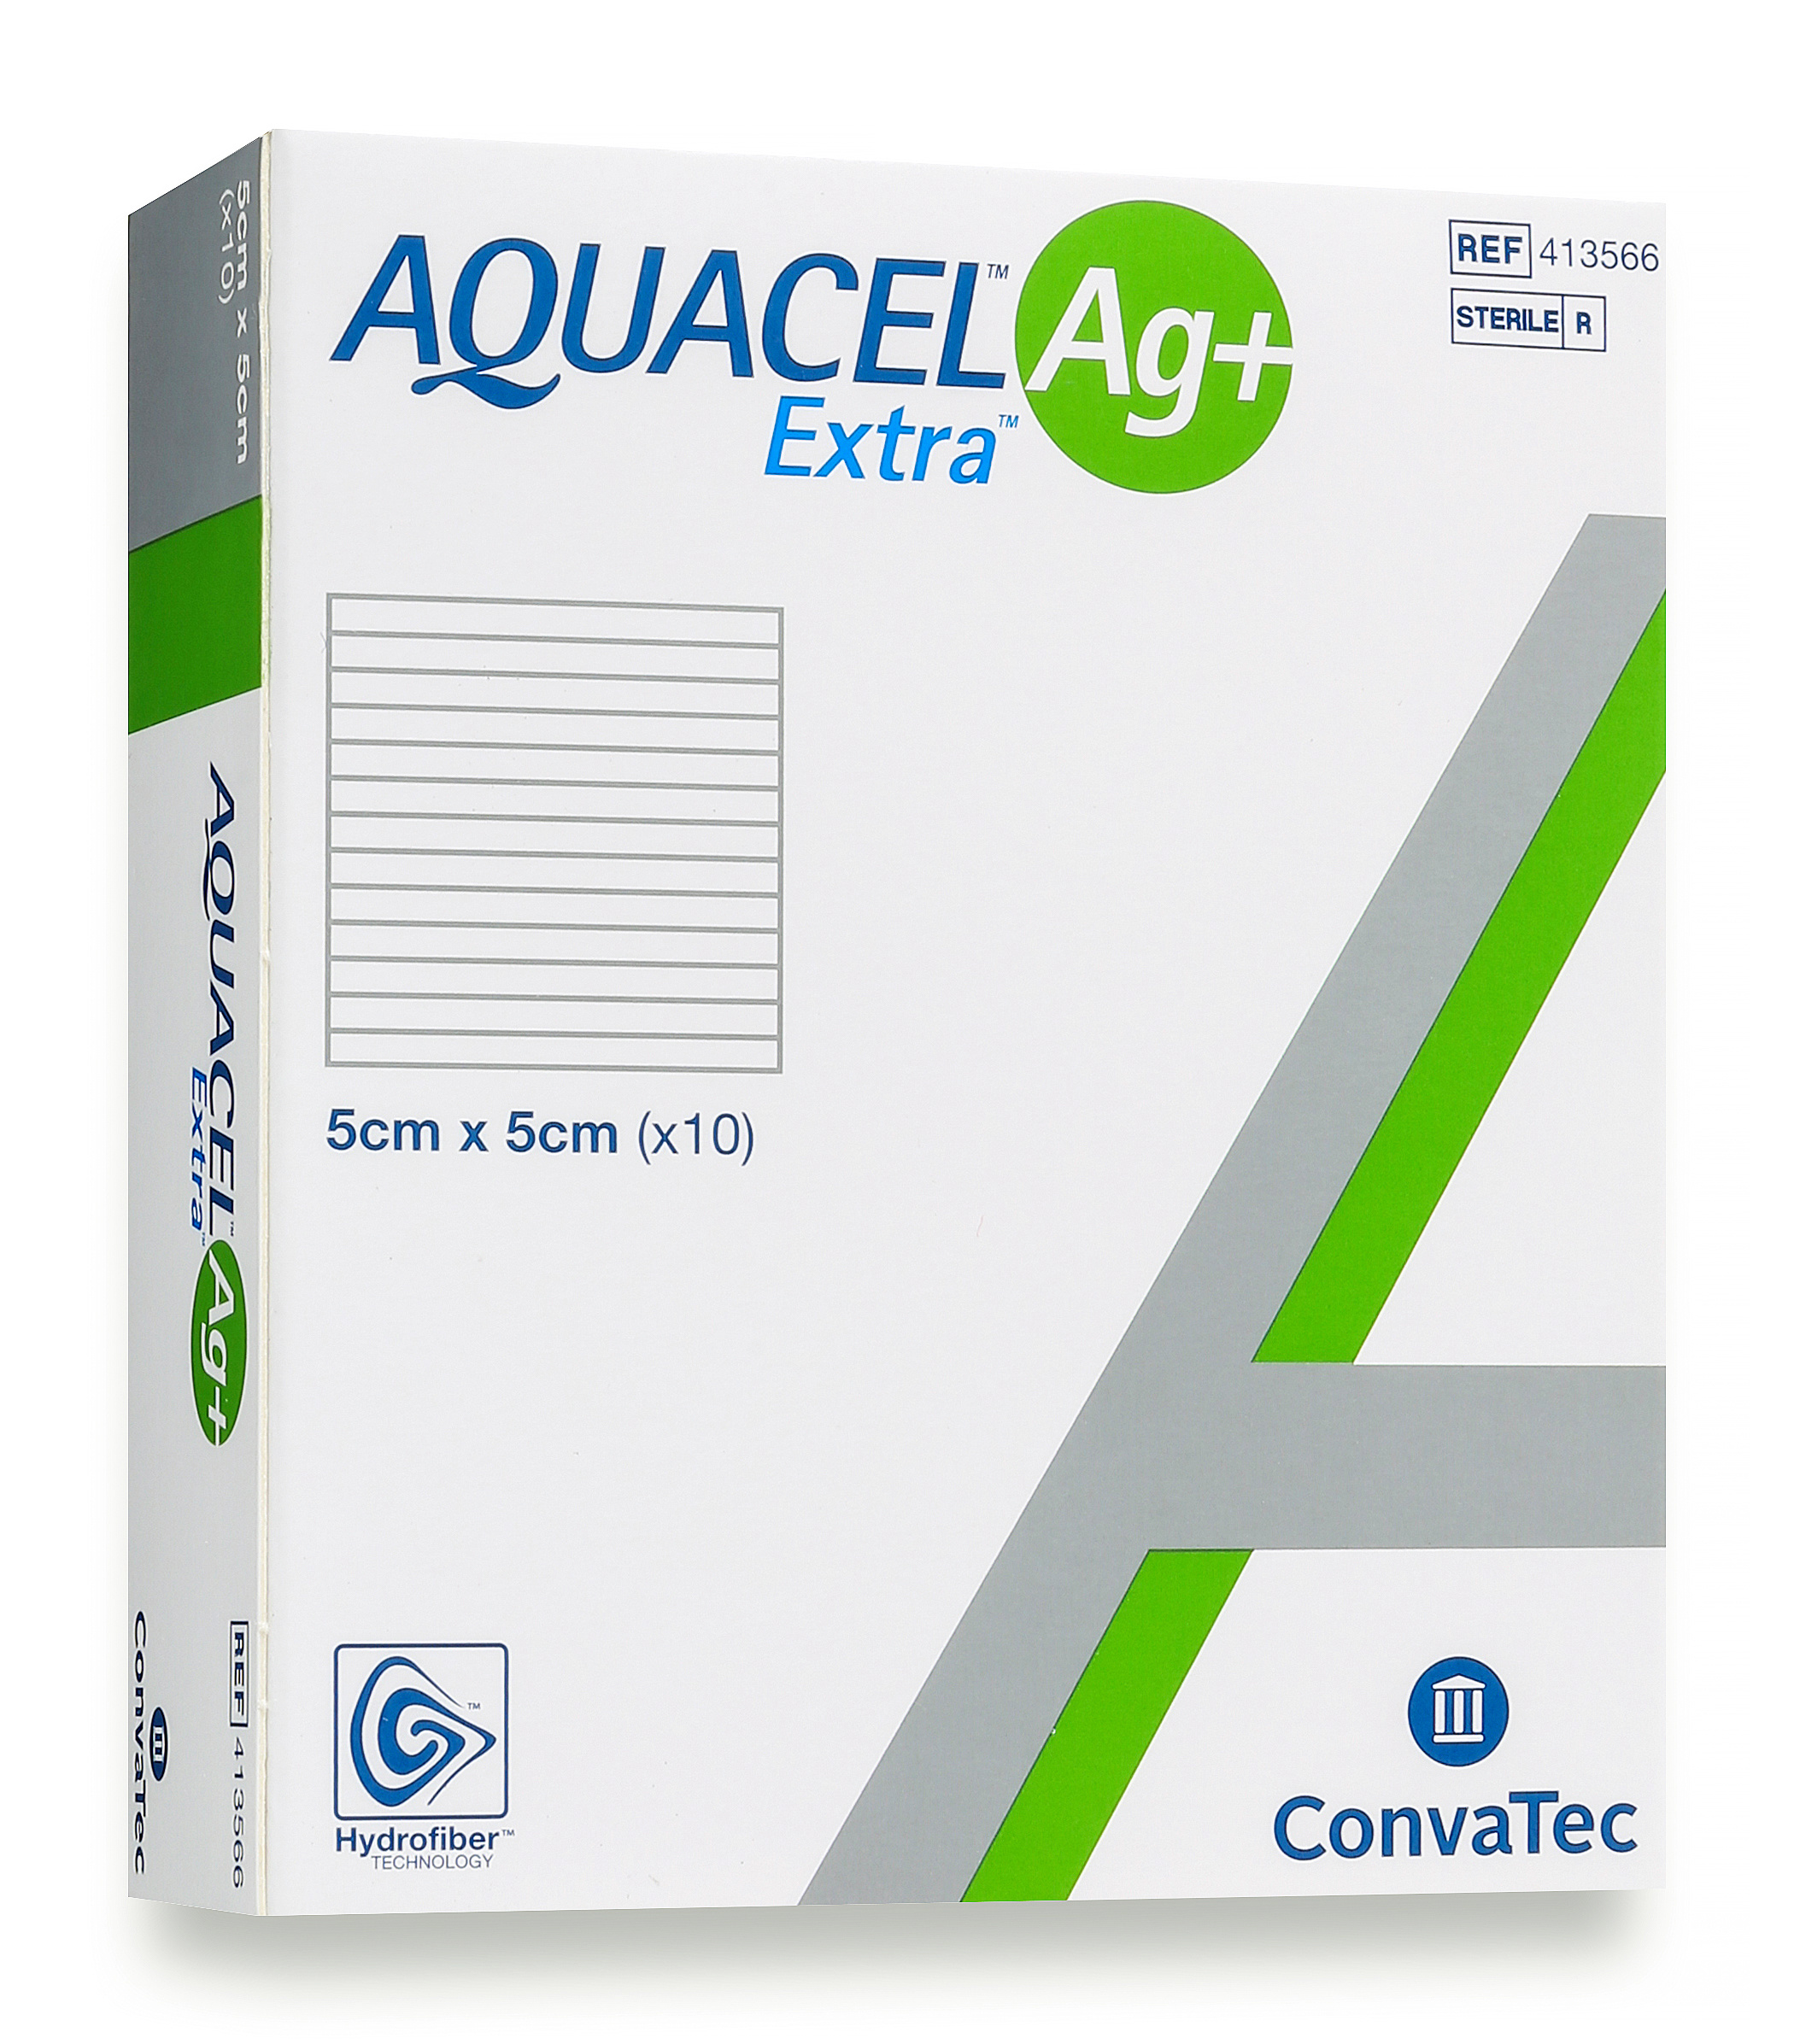 Aquacel Silver Dressing AG+ Extra 5cm x 5cm image 2